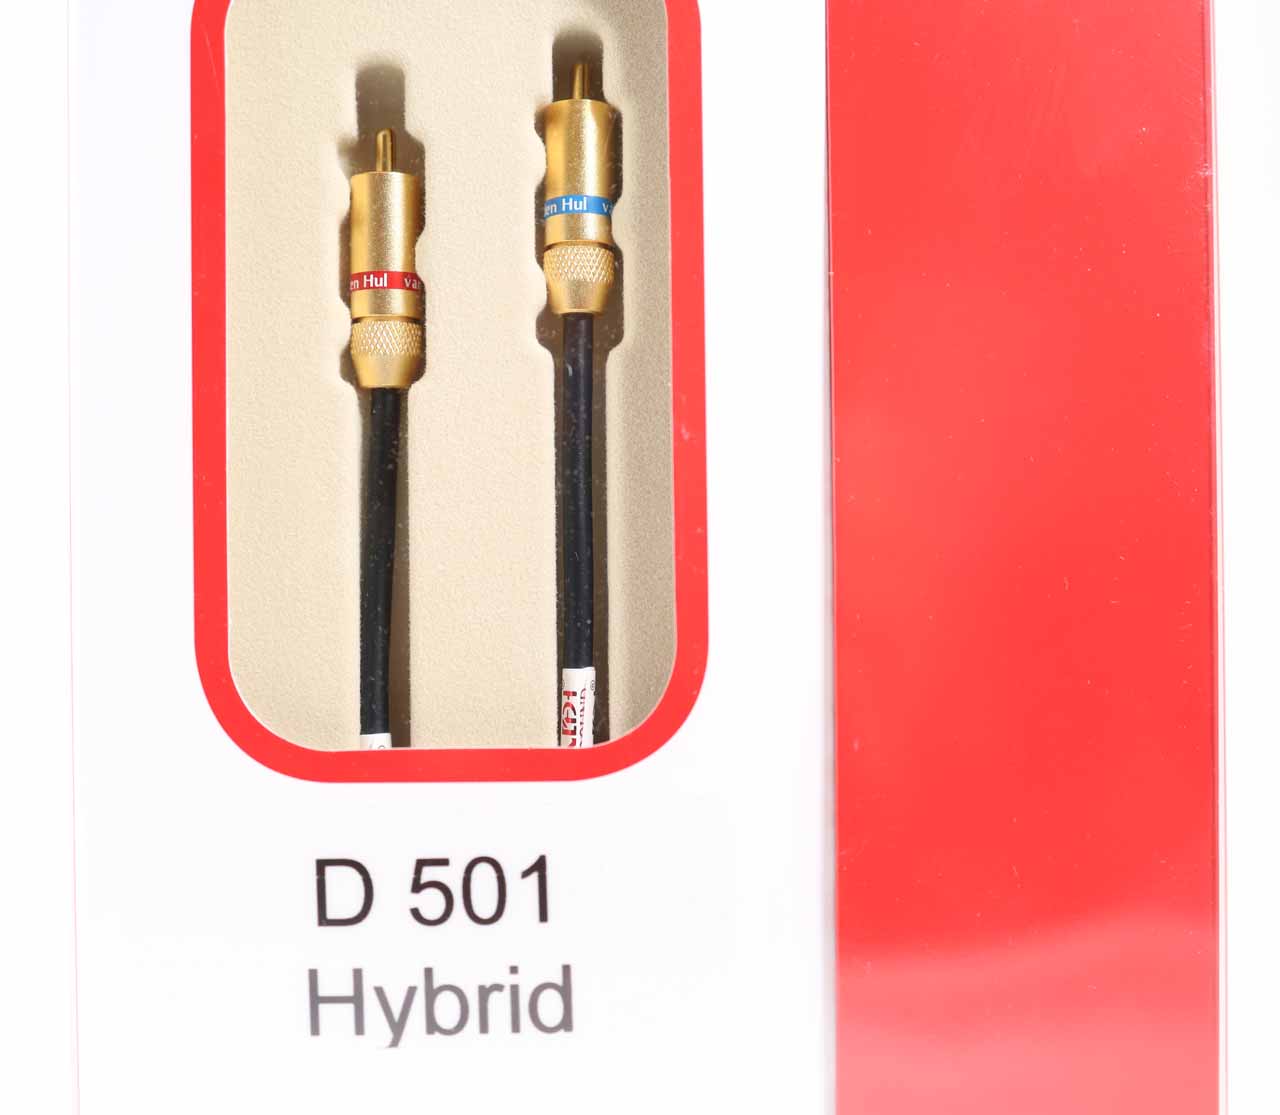 D-501 Hybrid